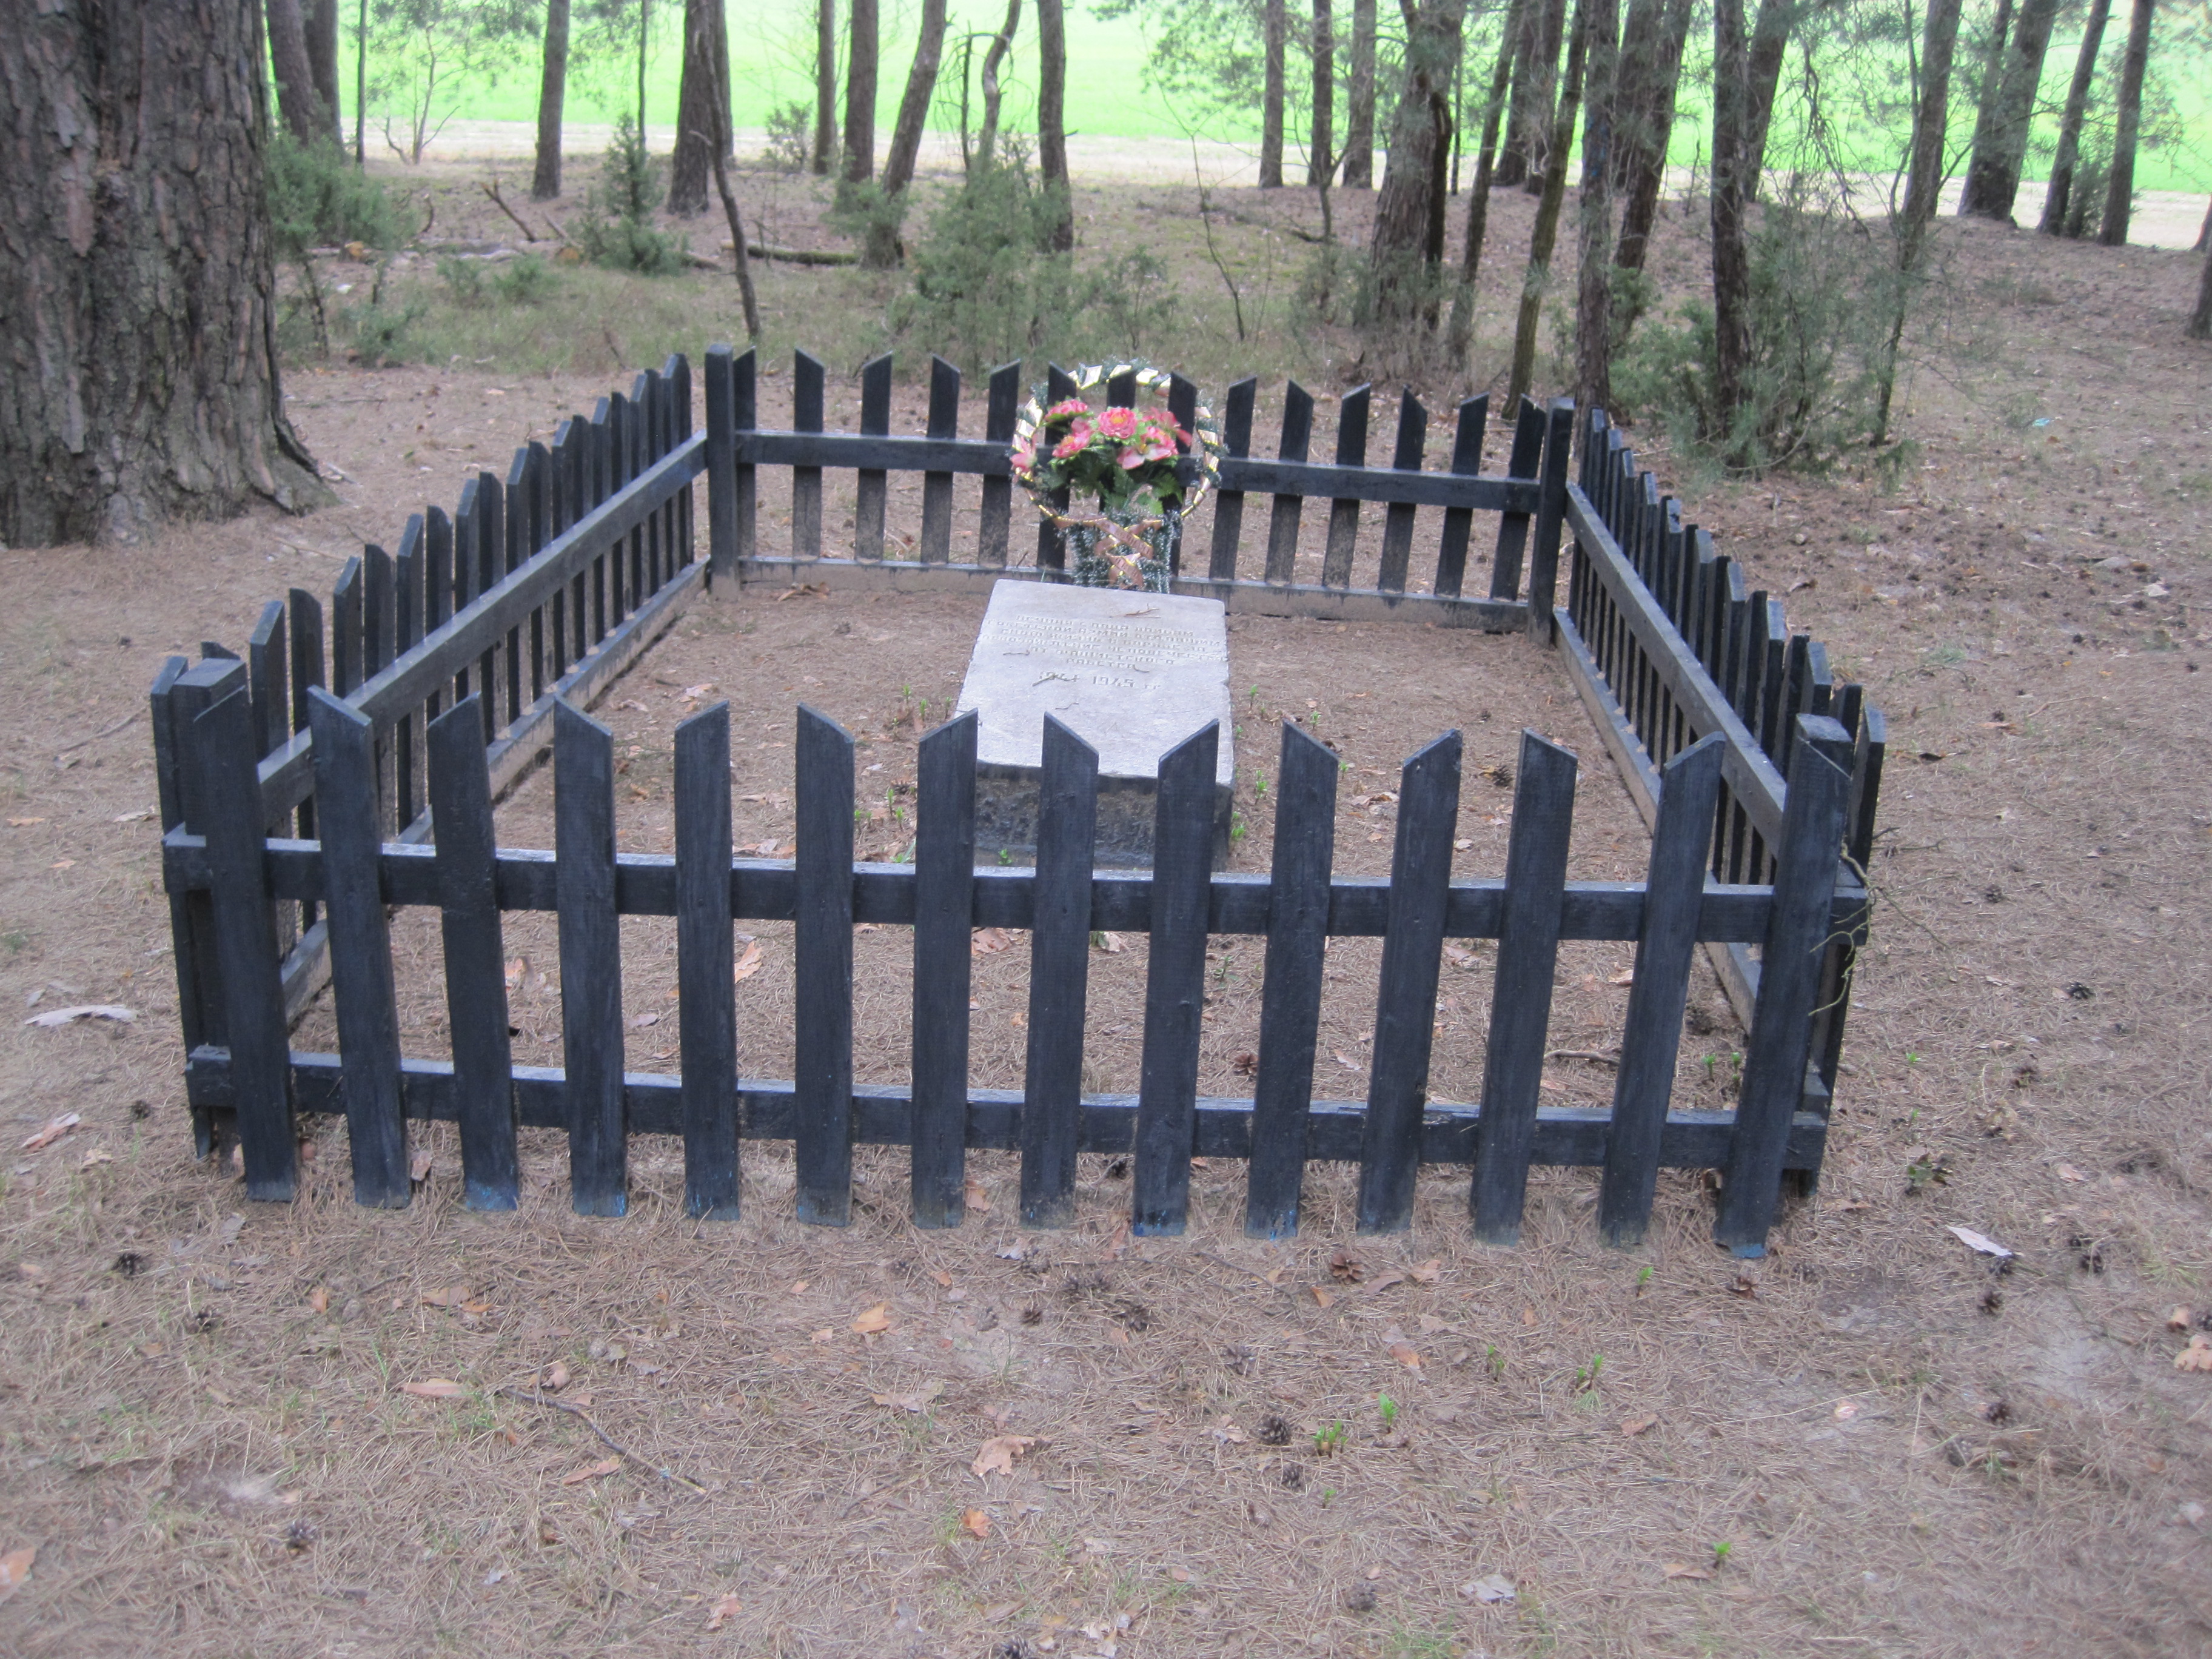 Памятник Советским воинам, расположенная в Около аг. Пелище (на краю леса), Каменецкий район, Брестская область